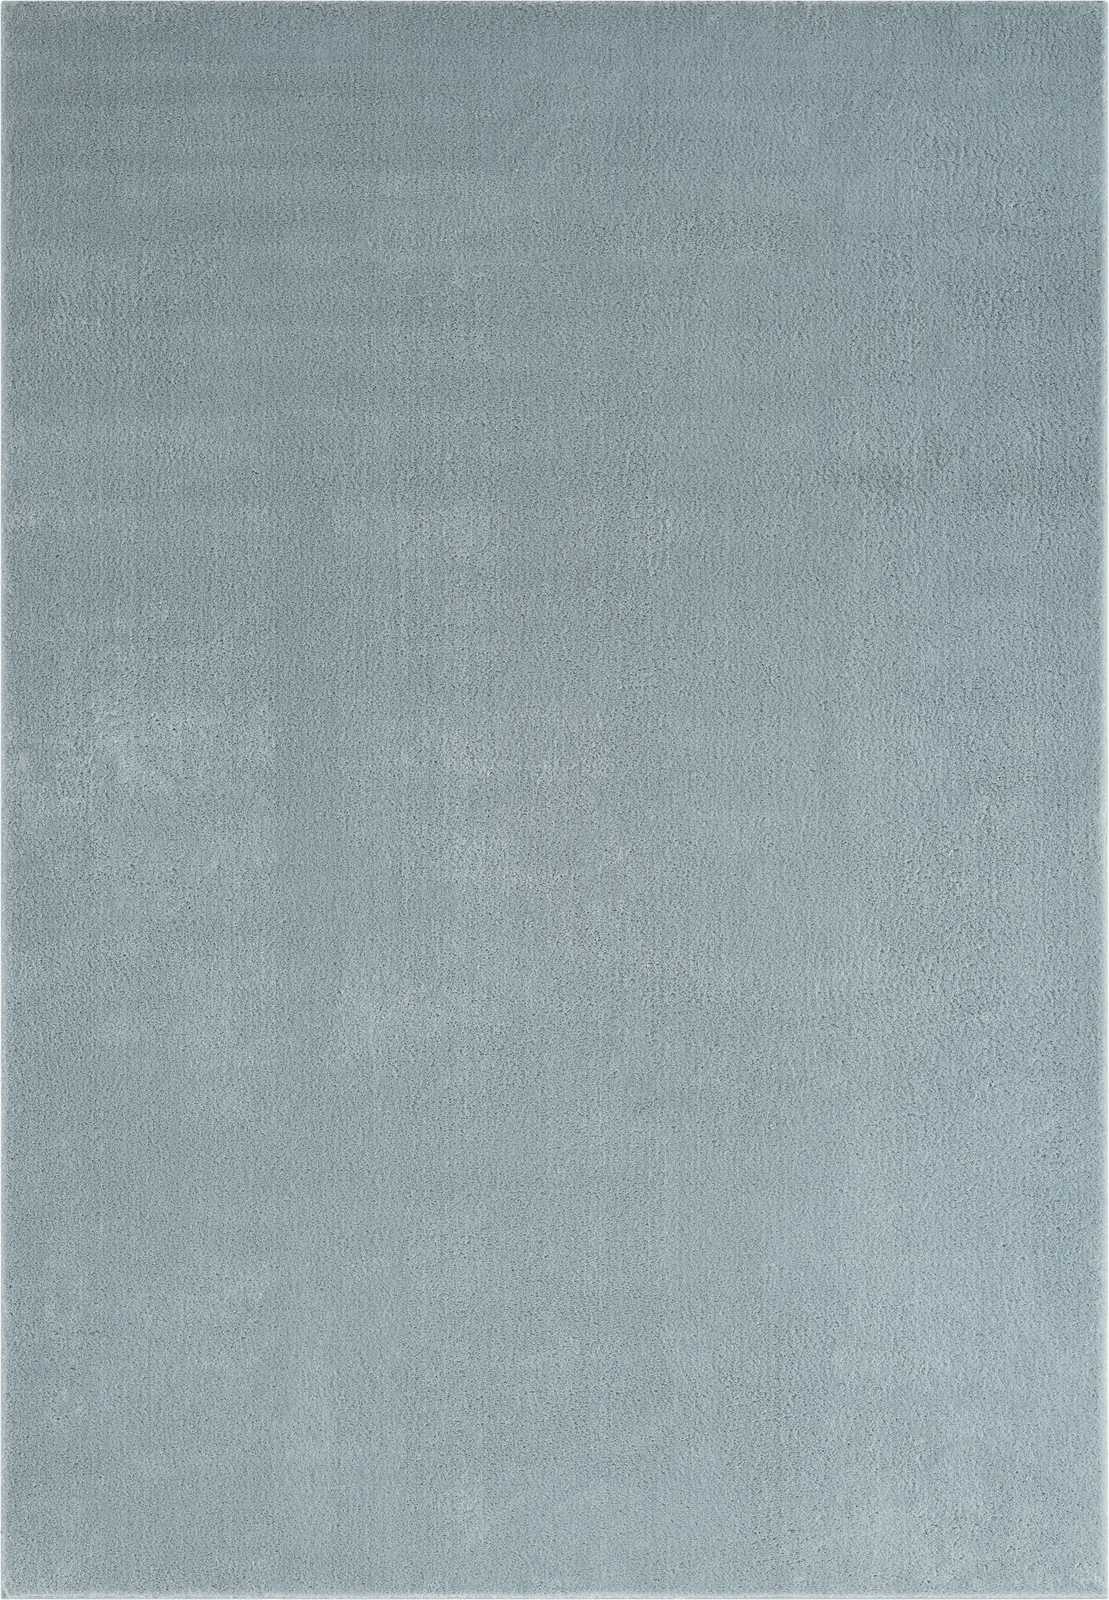             Flauschiger Hochflor Teppich in Blau – 200 x 140 cm
        